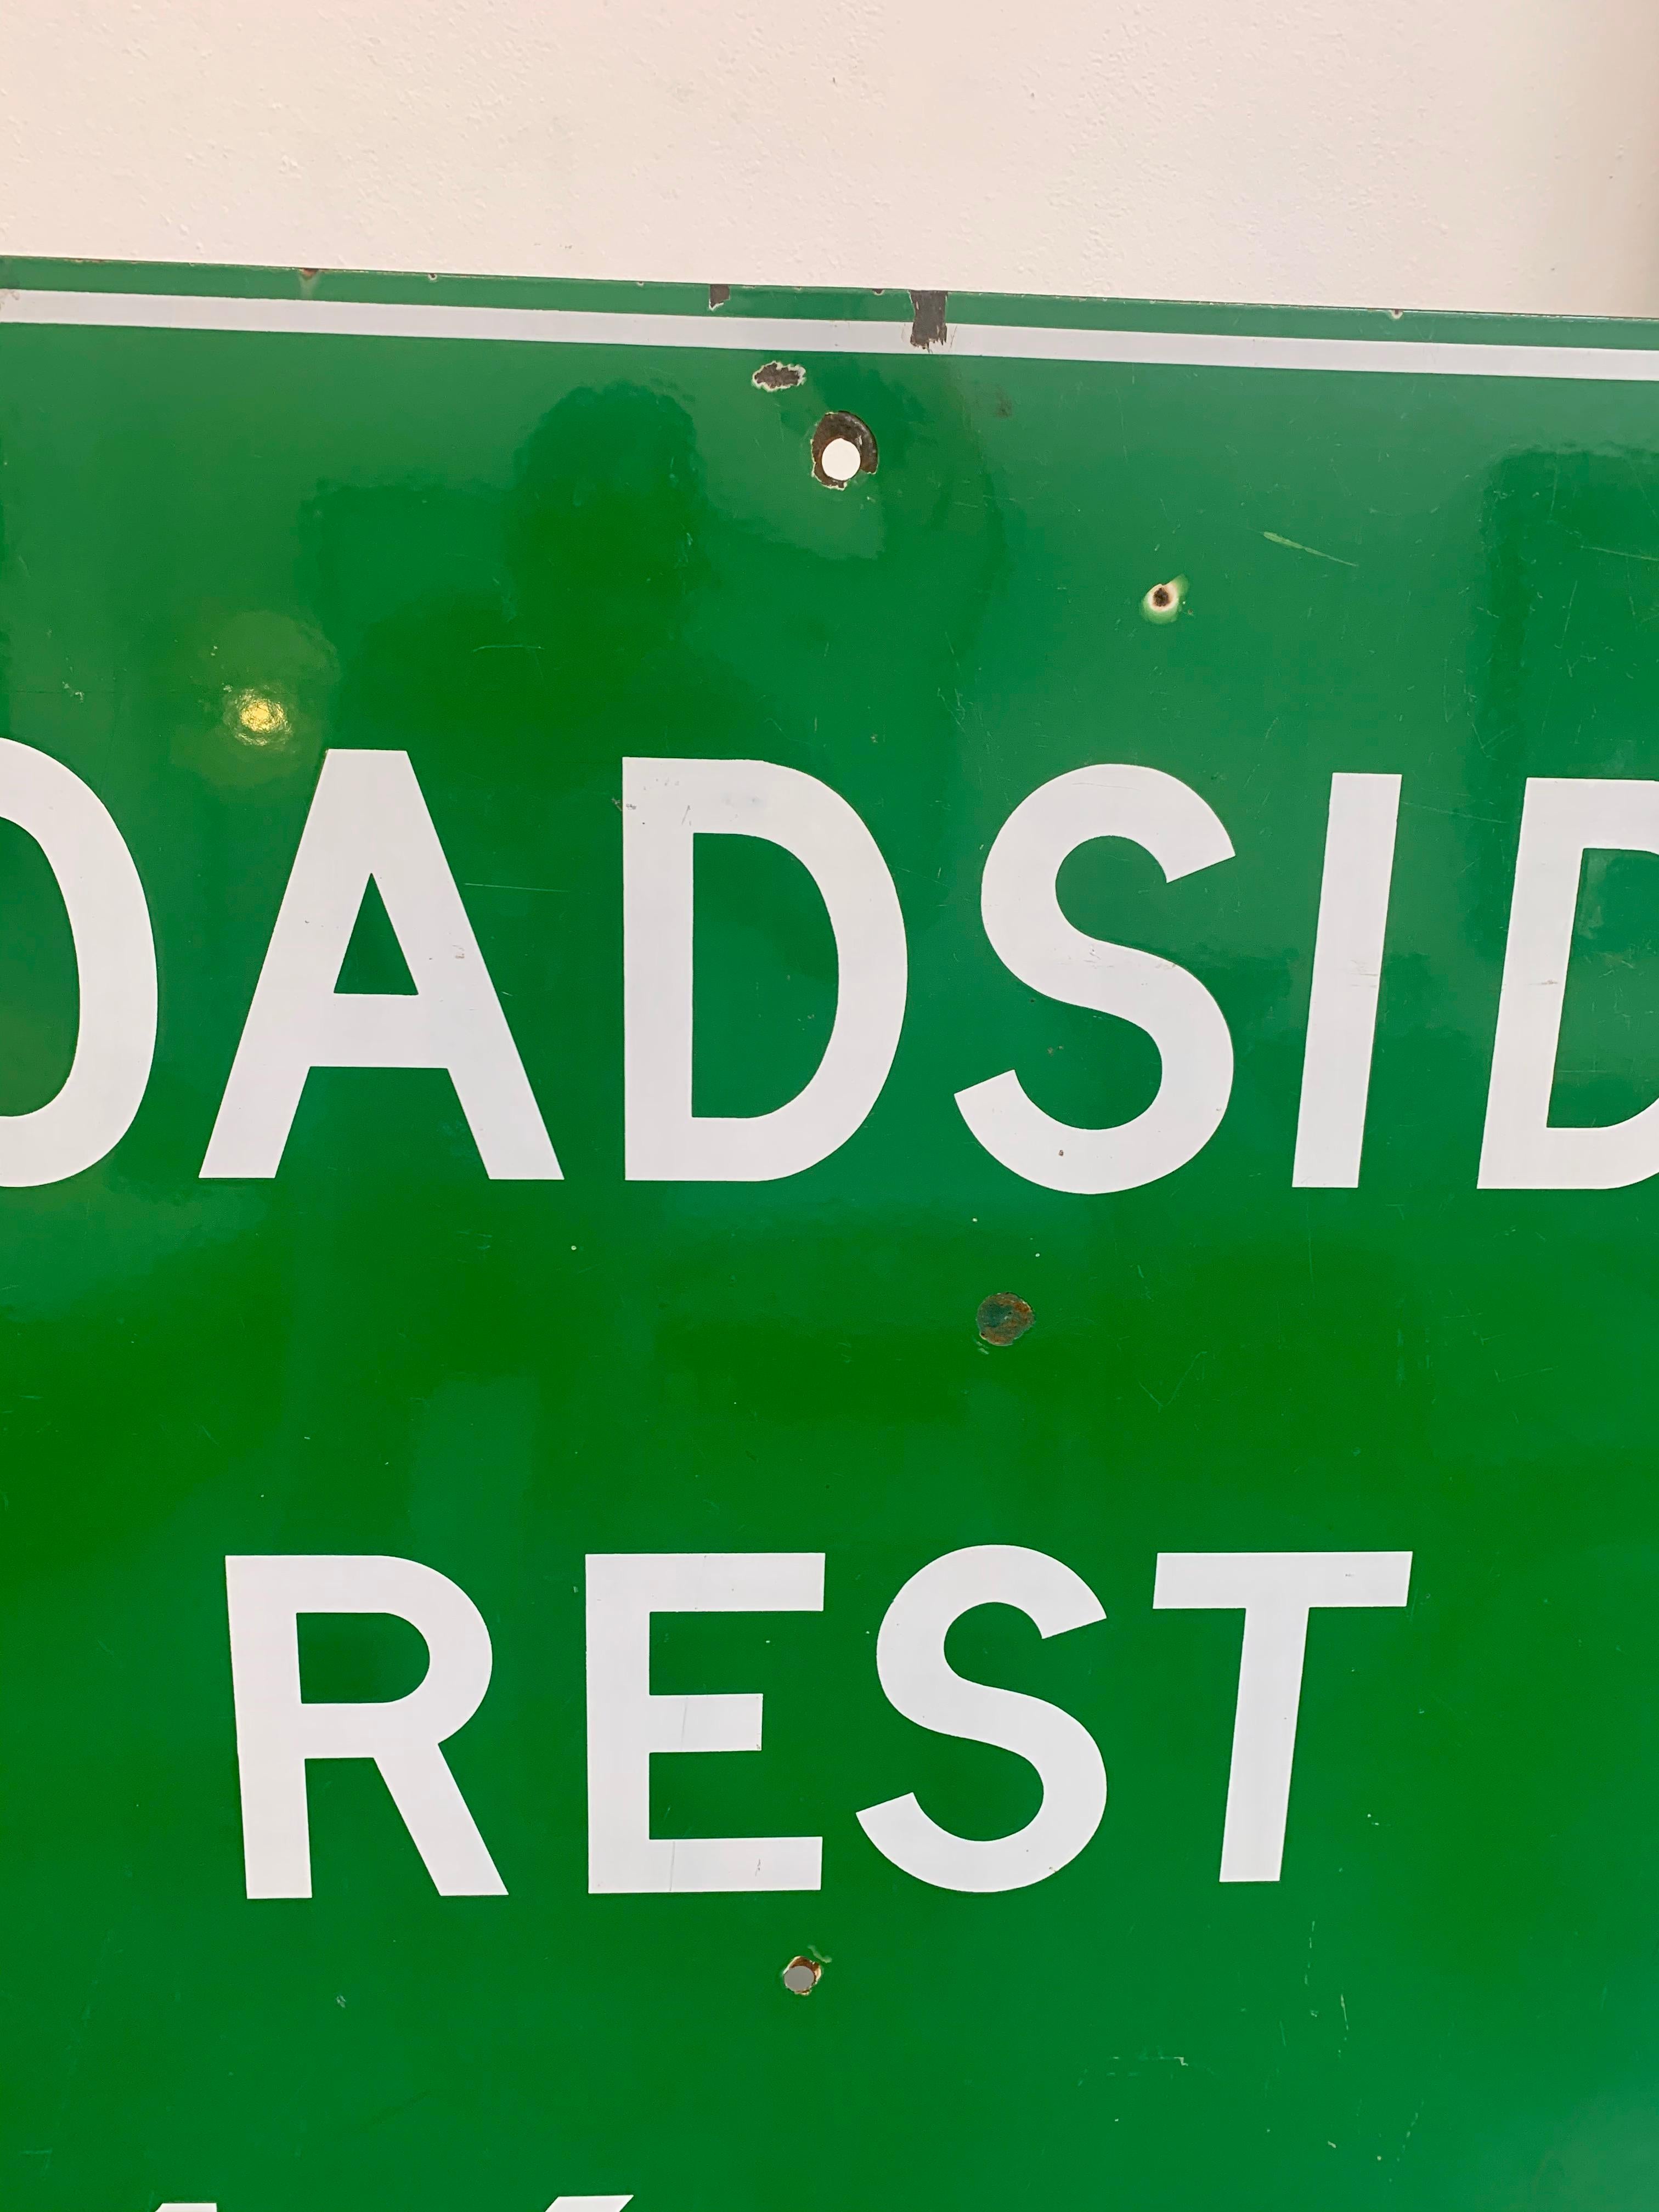 Steel Monumental Porcelain Roadside Rest Highway Sign For Sale